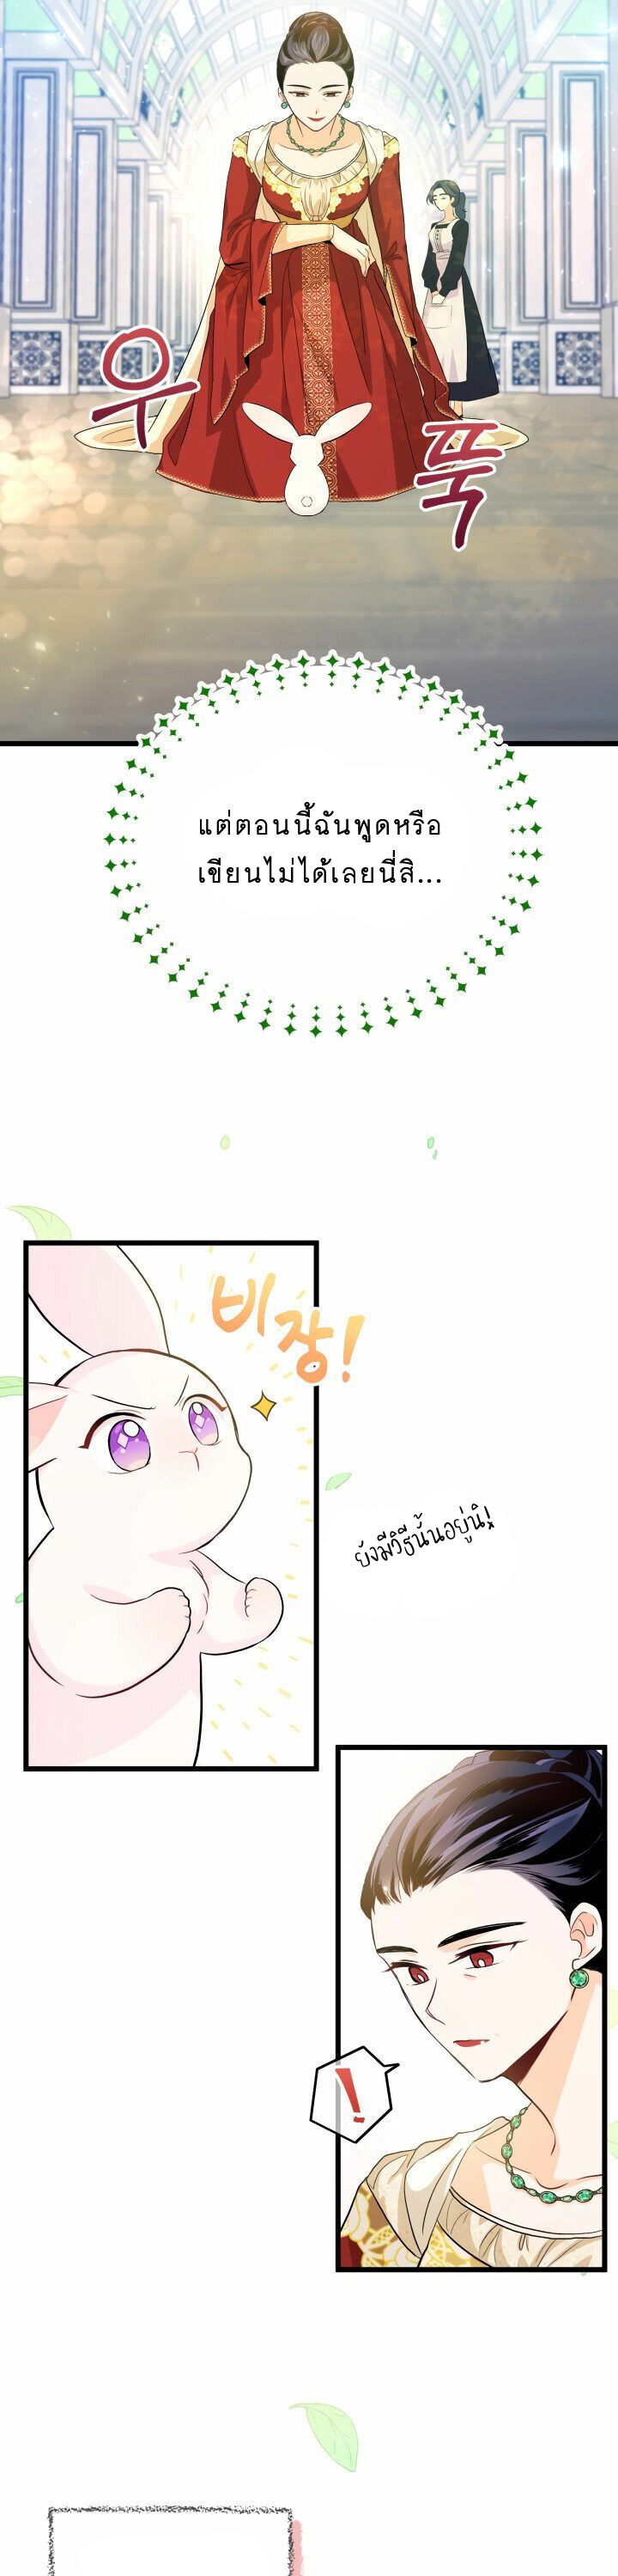 rabbit11 37